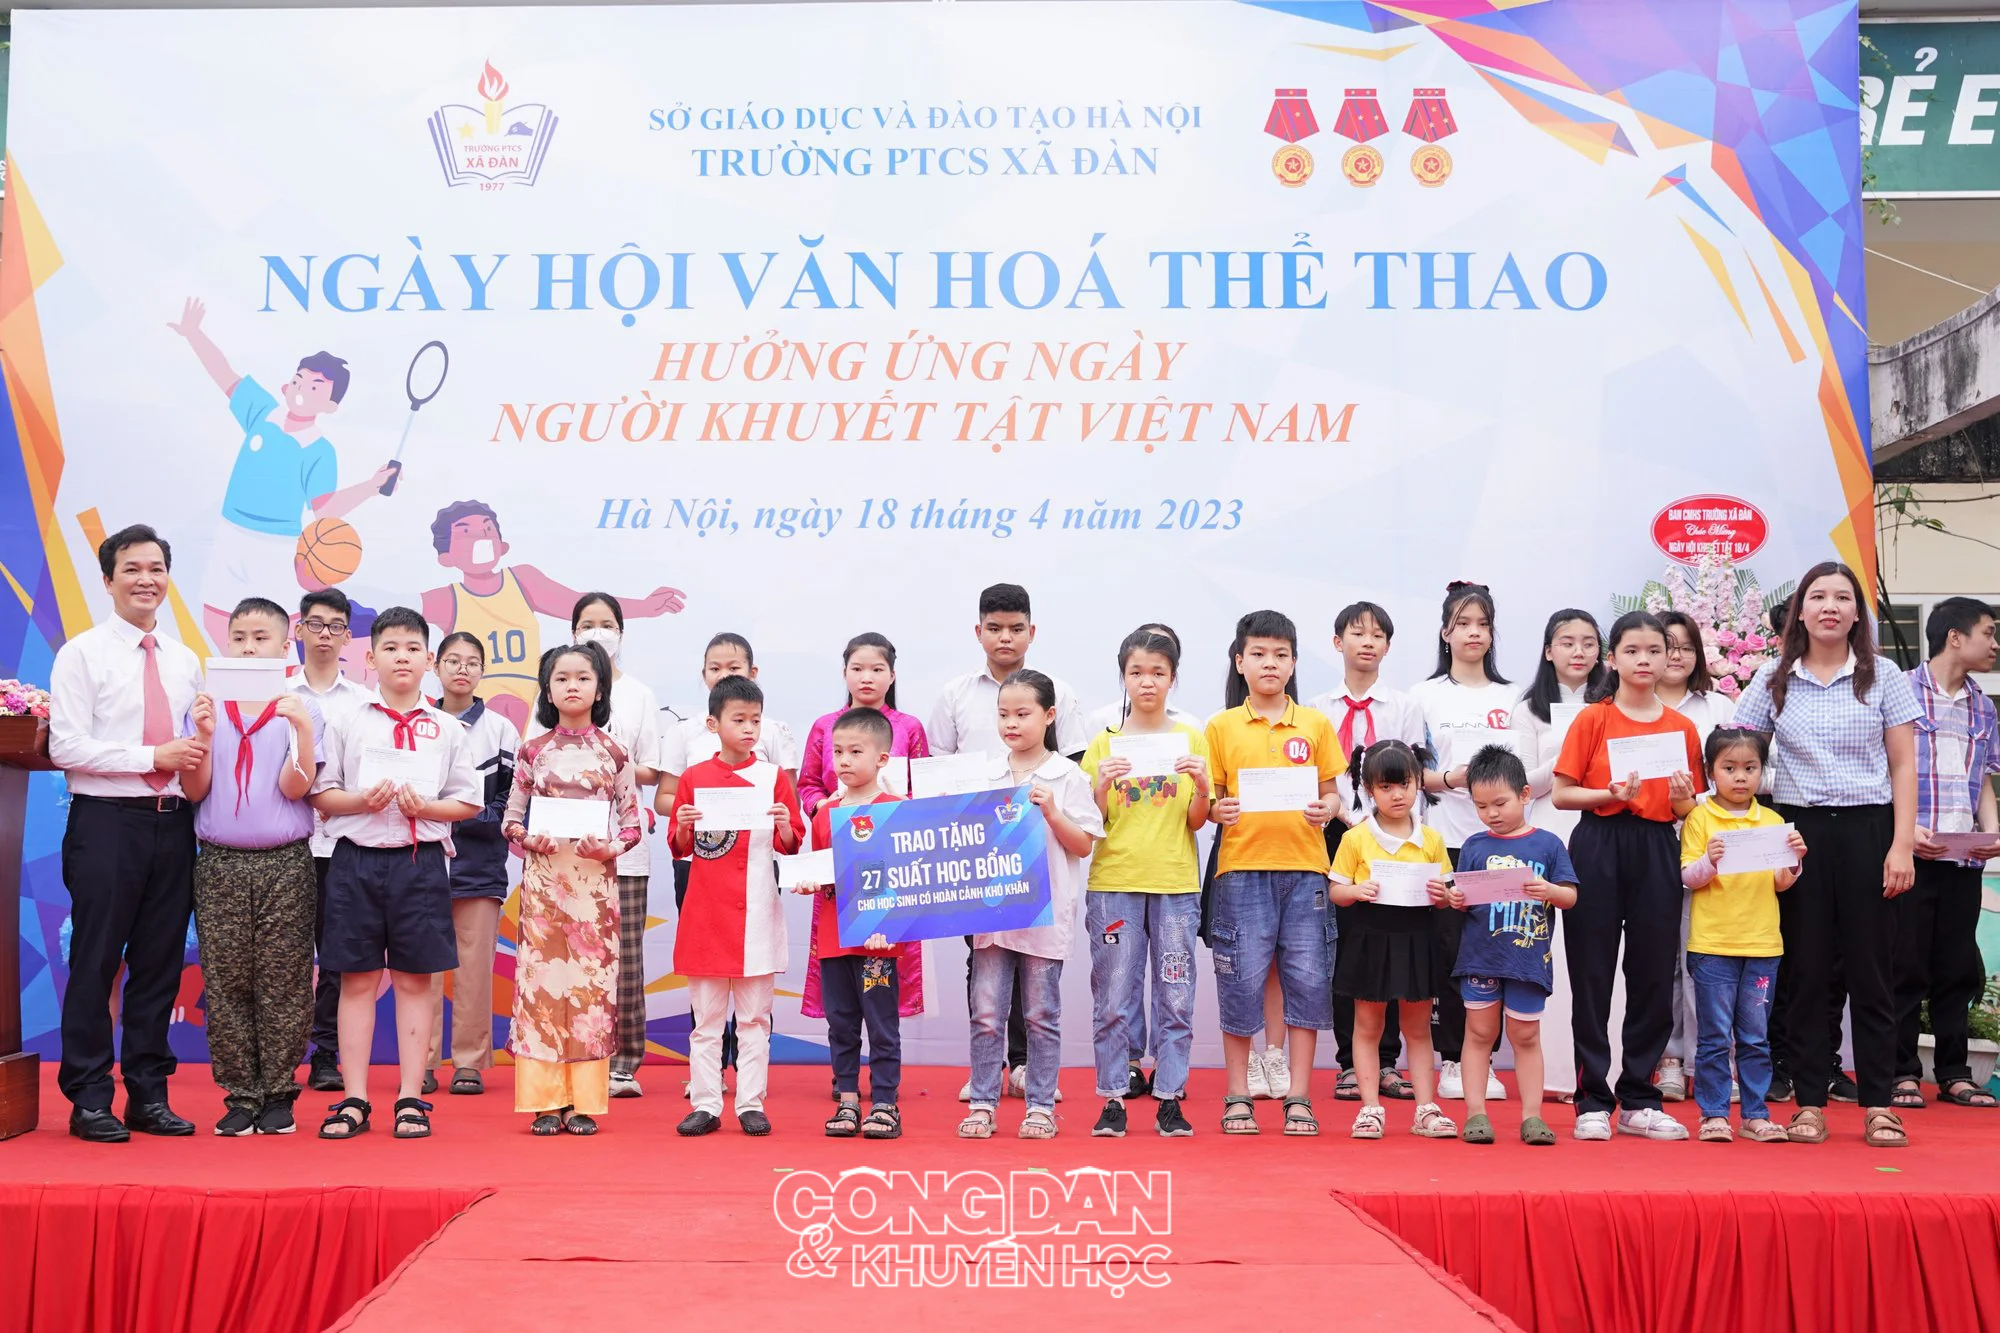 Quỹ Khuyến học Việt Nam trao 100 triệu đồng tặng Trường Phổ thông cơ sở Xã Đàn - Ảnh 3.